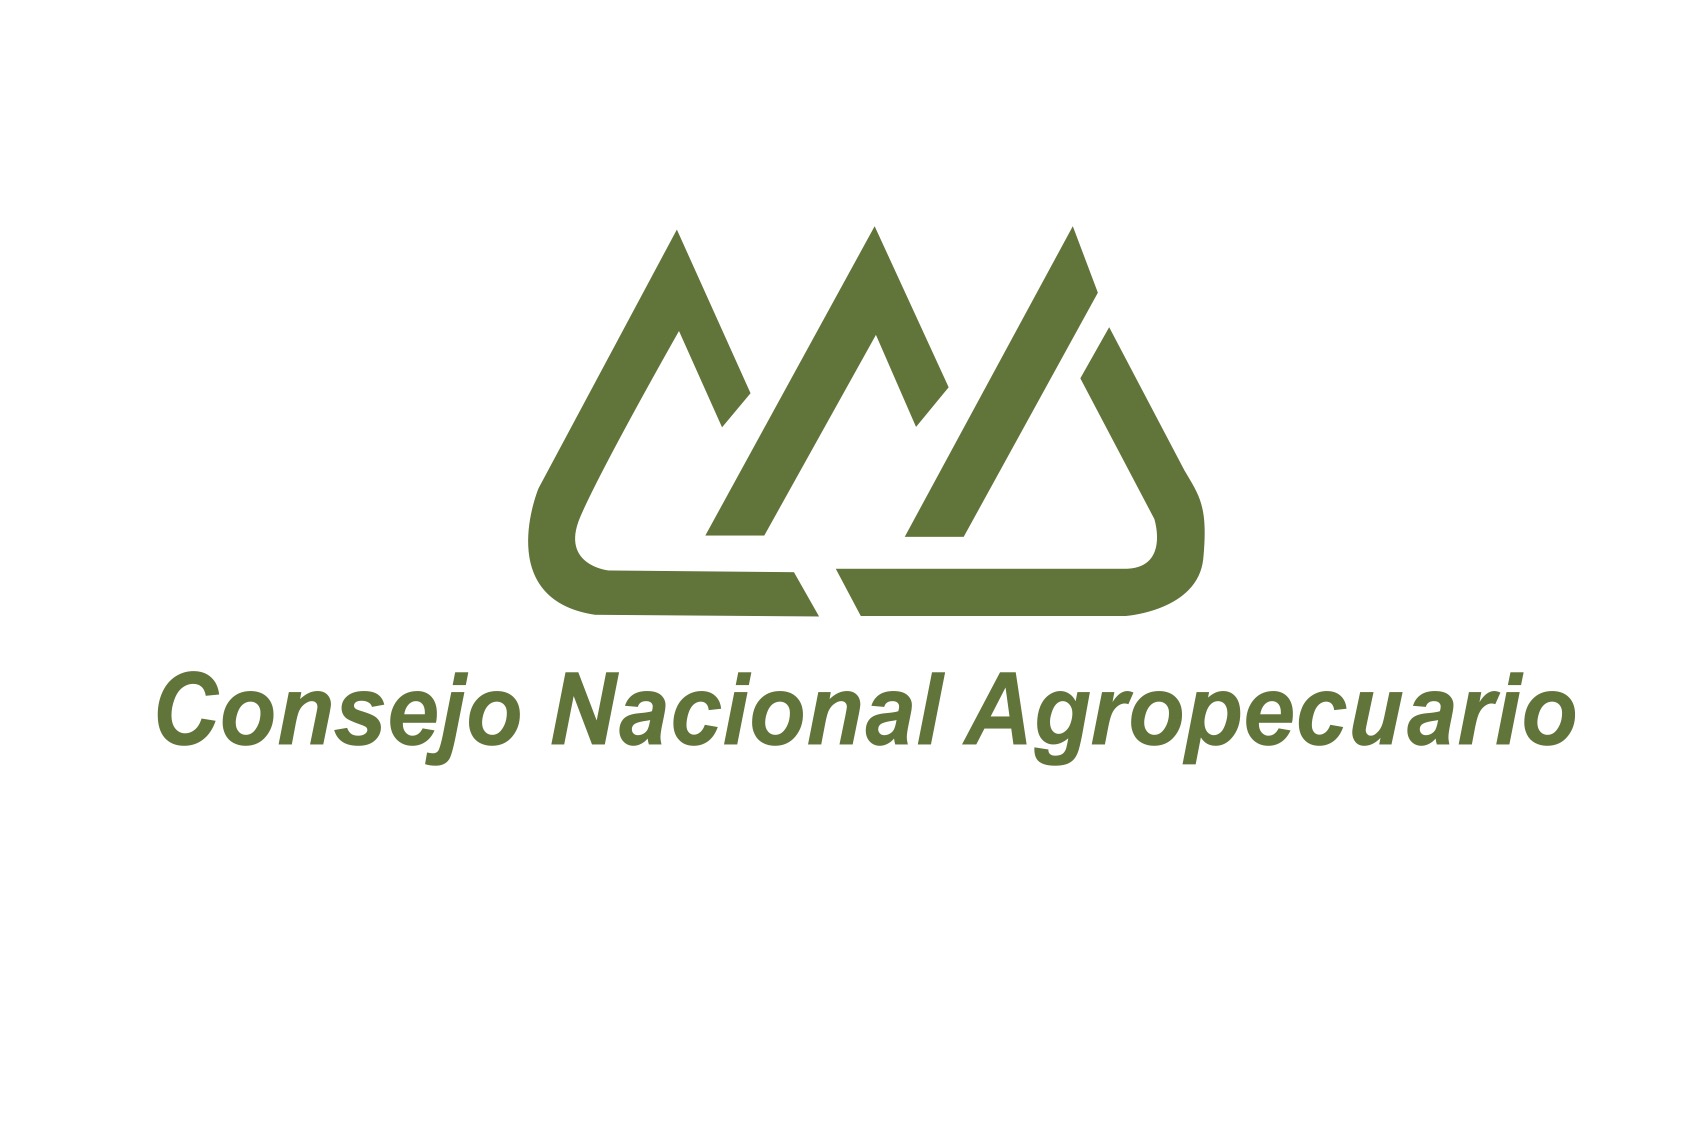 Consejo Nacional Agropecuario